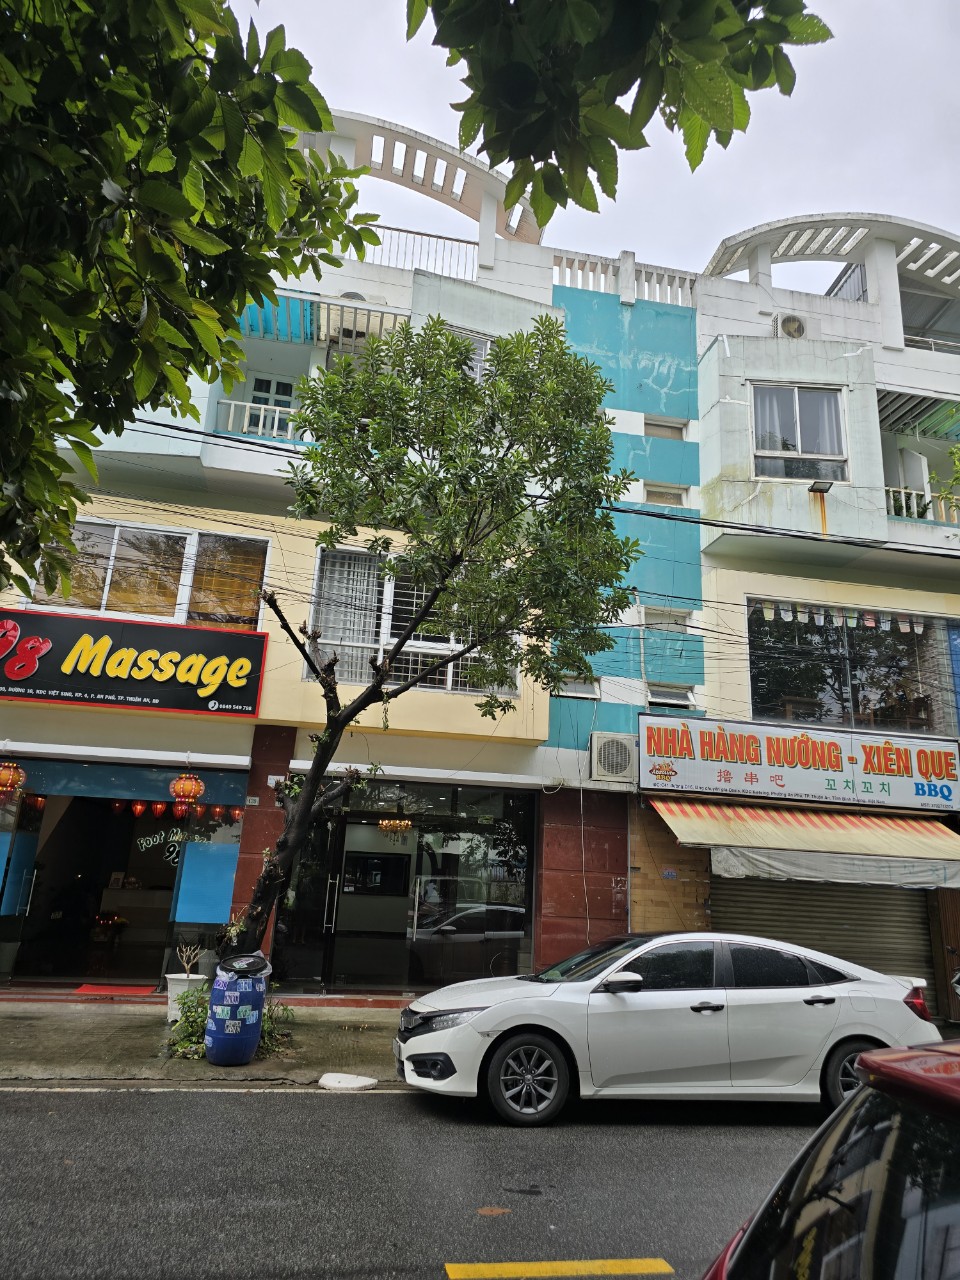 Cho thuê nhà phố nguyên căn 1 trệt, 1 lầu, tiện vừa ở vừa kinh doanh tại Vsip 1, Thuận An, BD - Ảnh 7